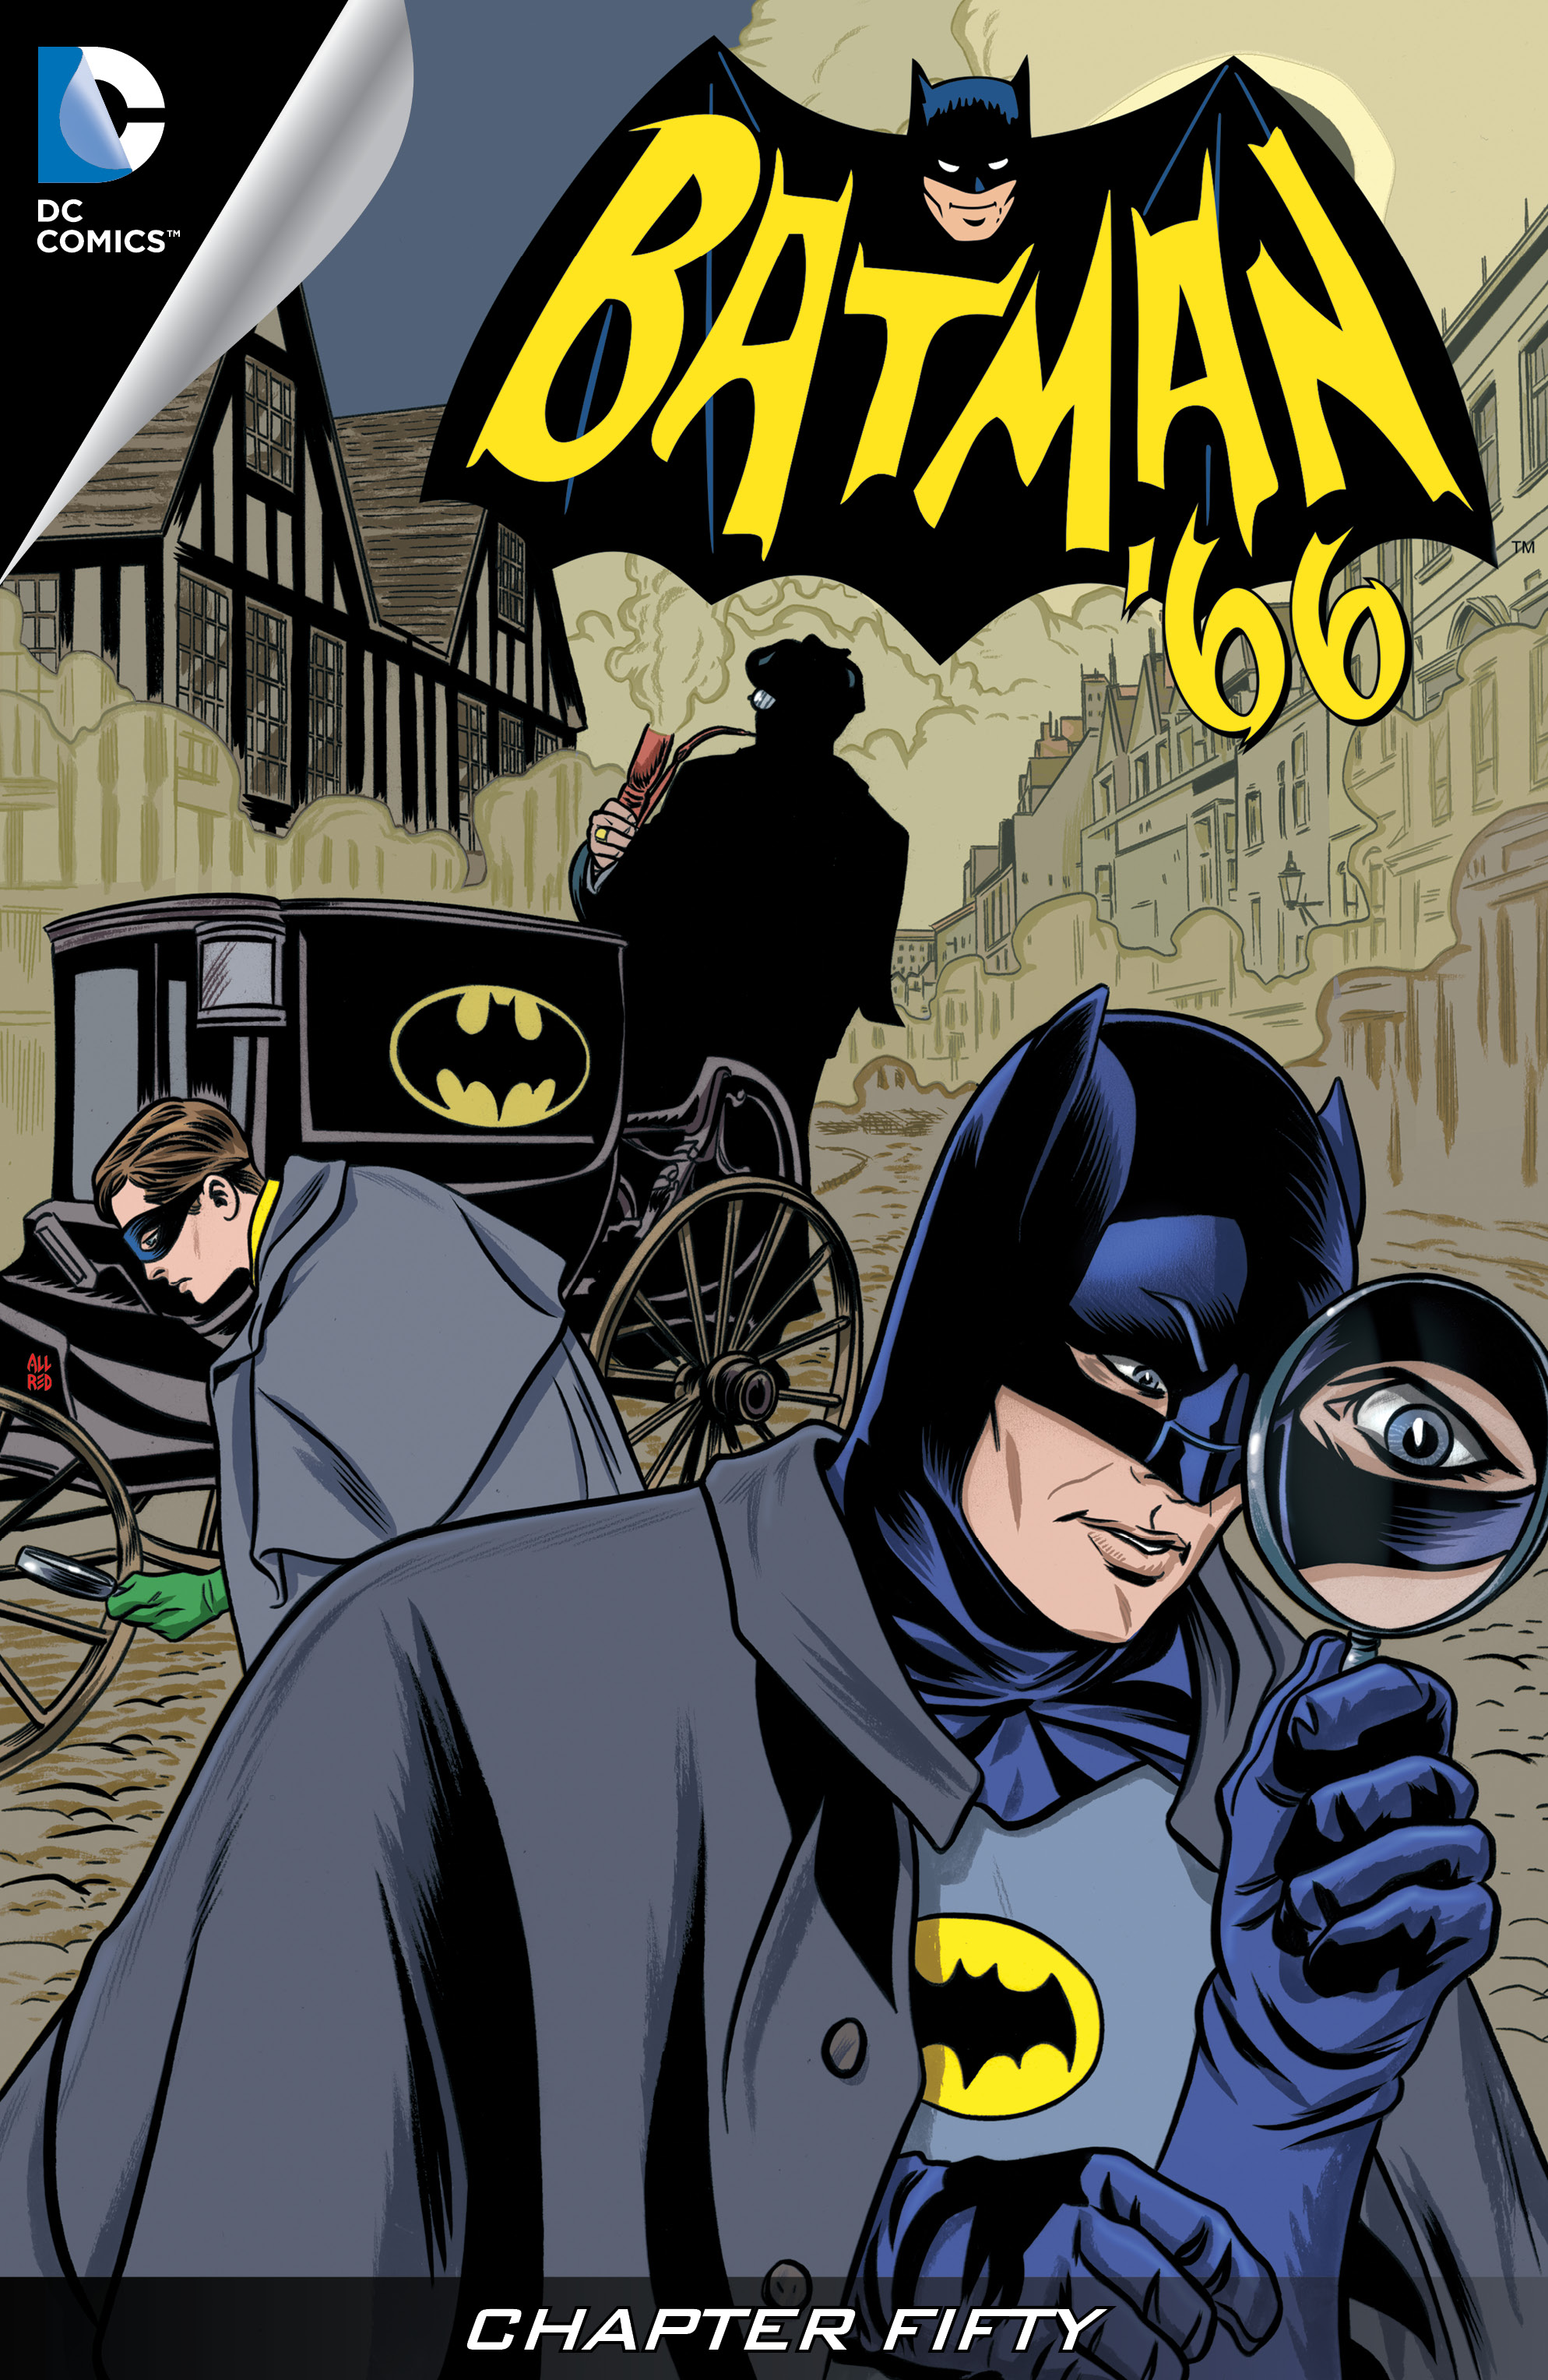 Batman '66 #50 preview images